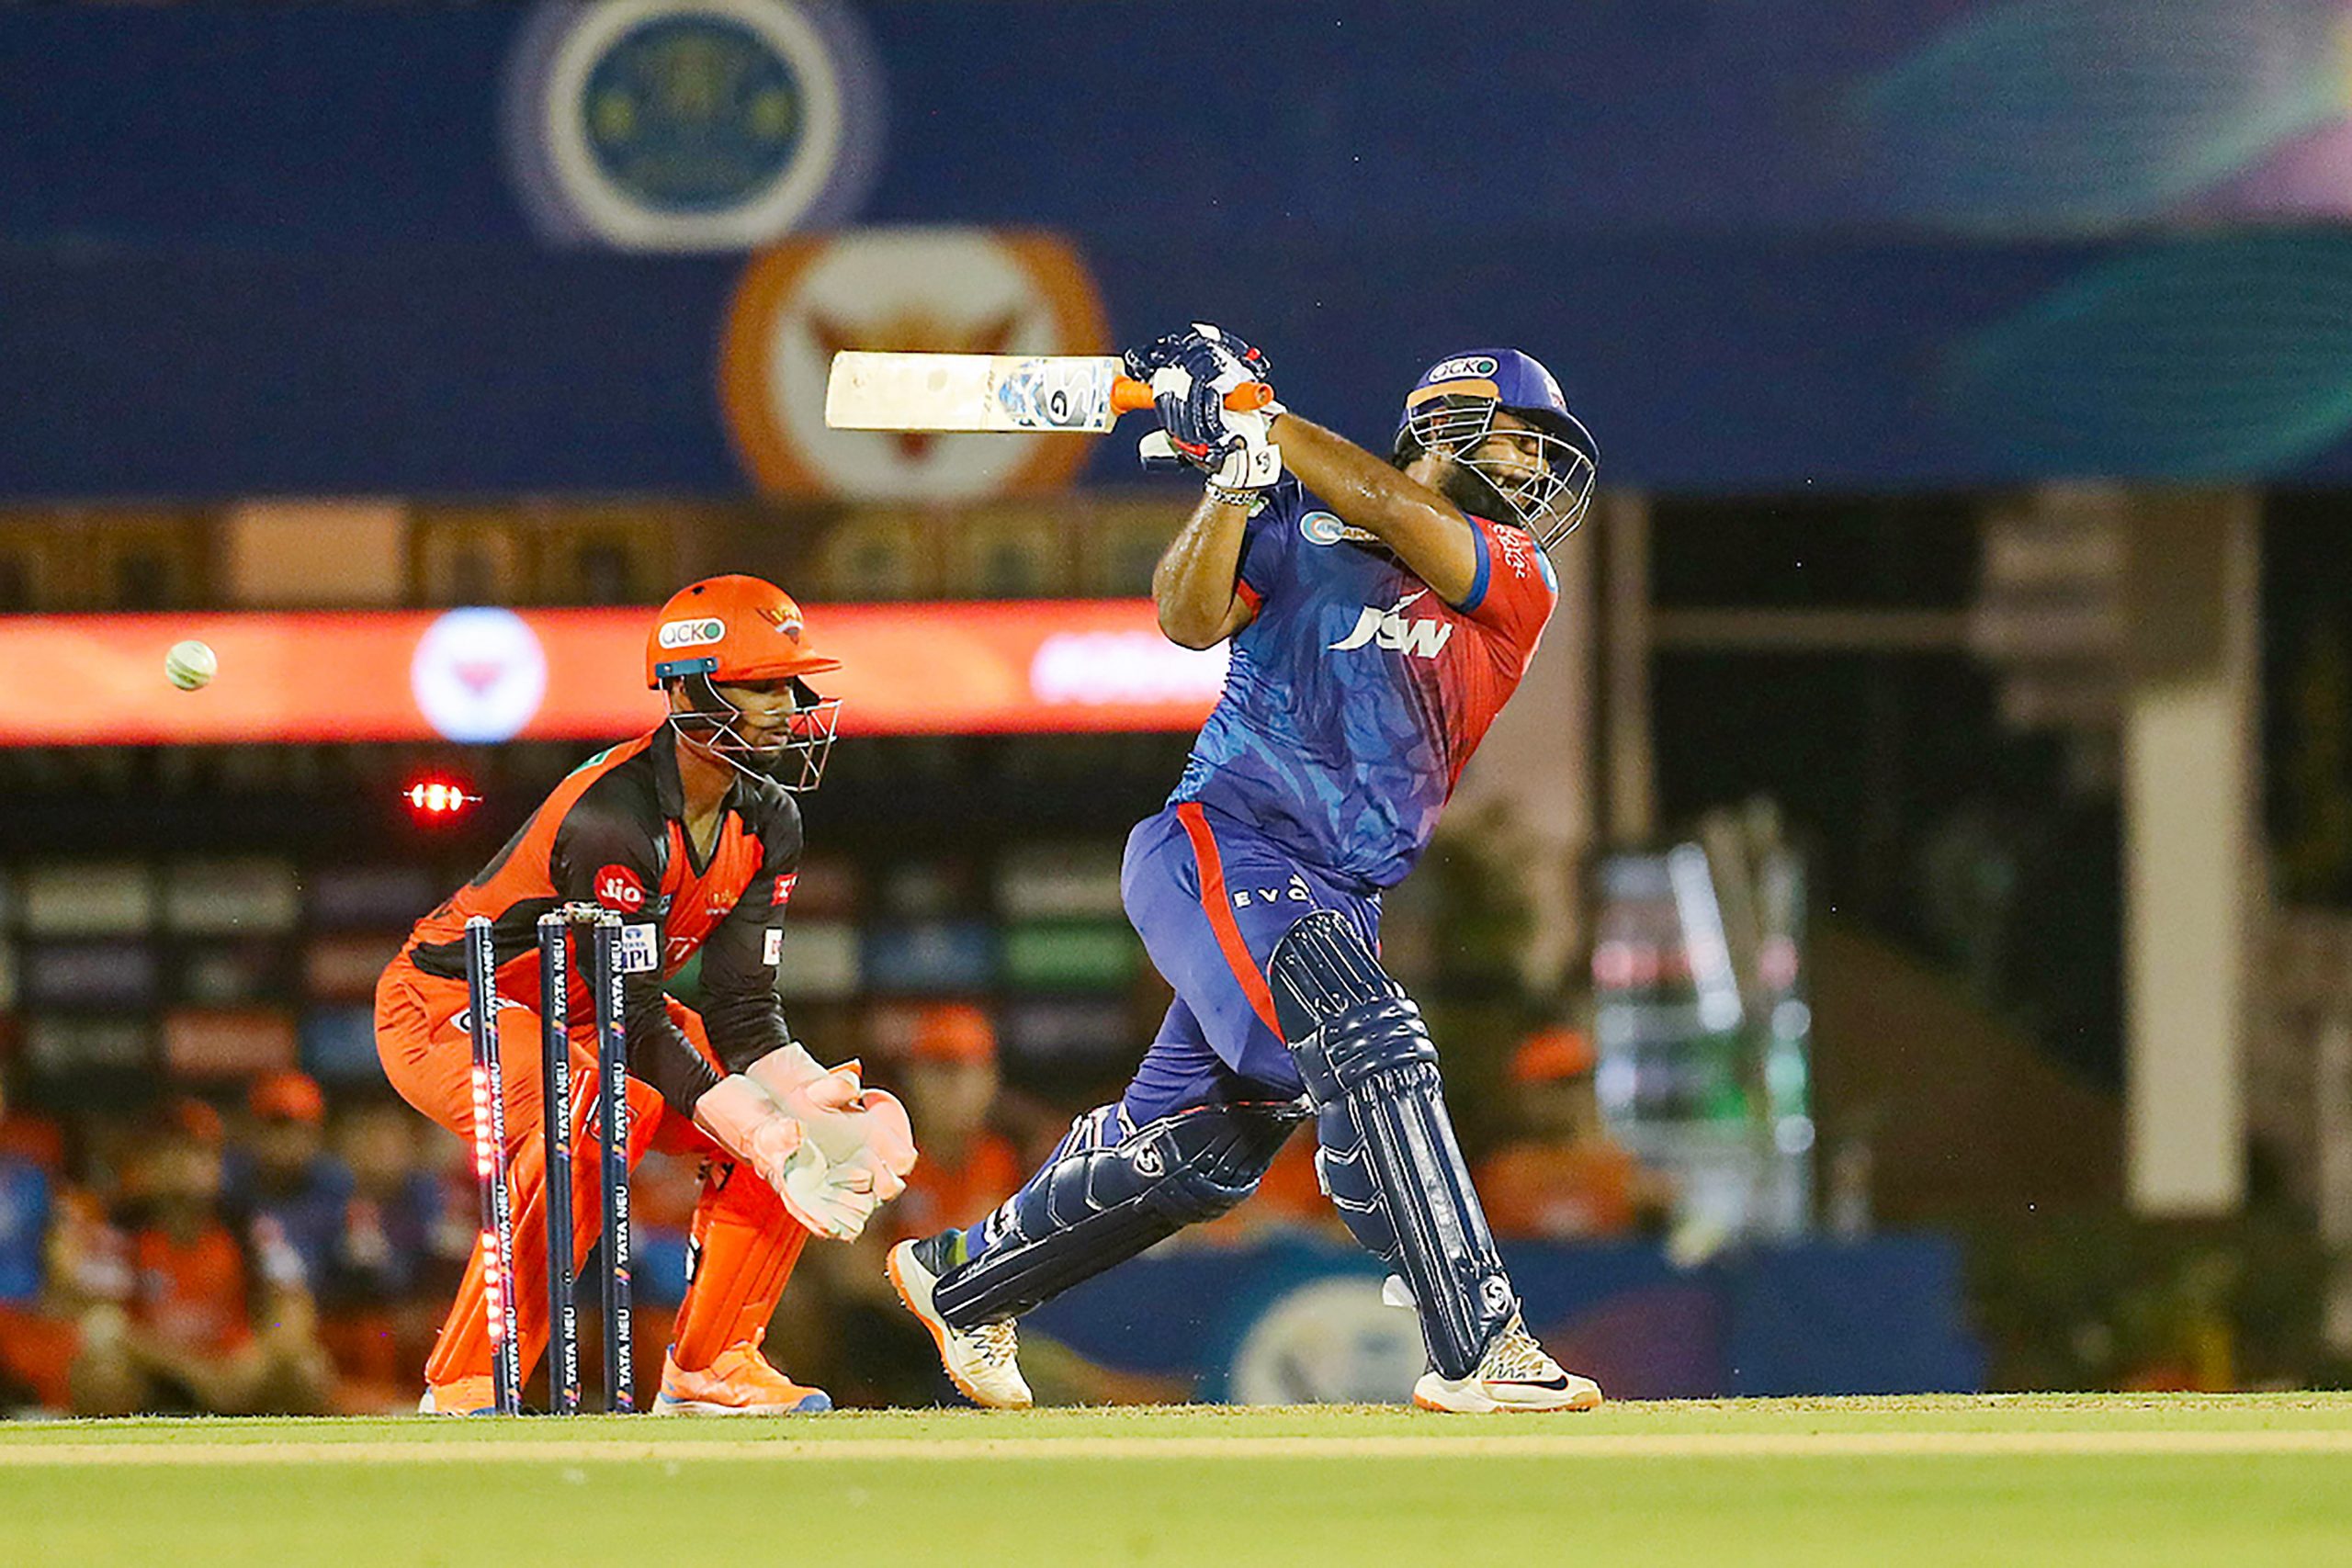 VIDEO: Rishabh Pant हैट्रिक छक्के और बाउंड्री के बाद कैसे श्रेयस की गेंद में फंस गए